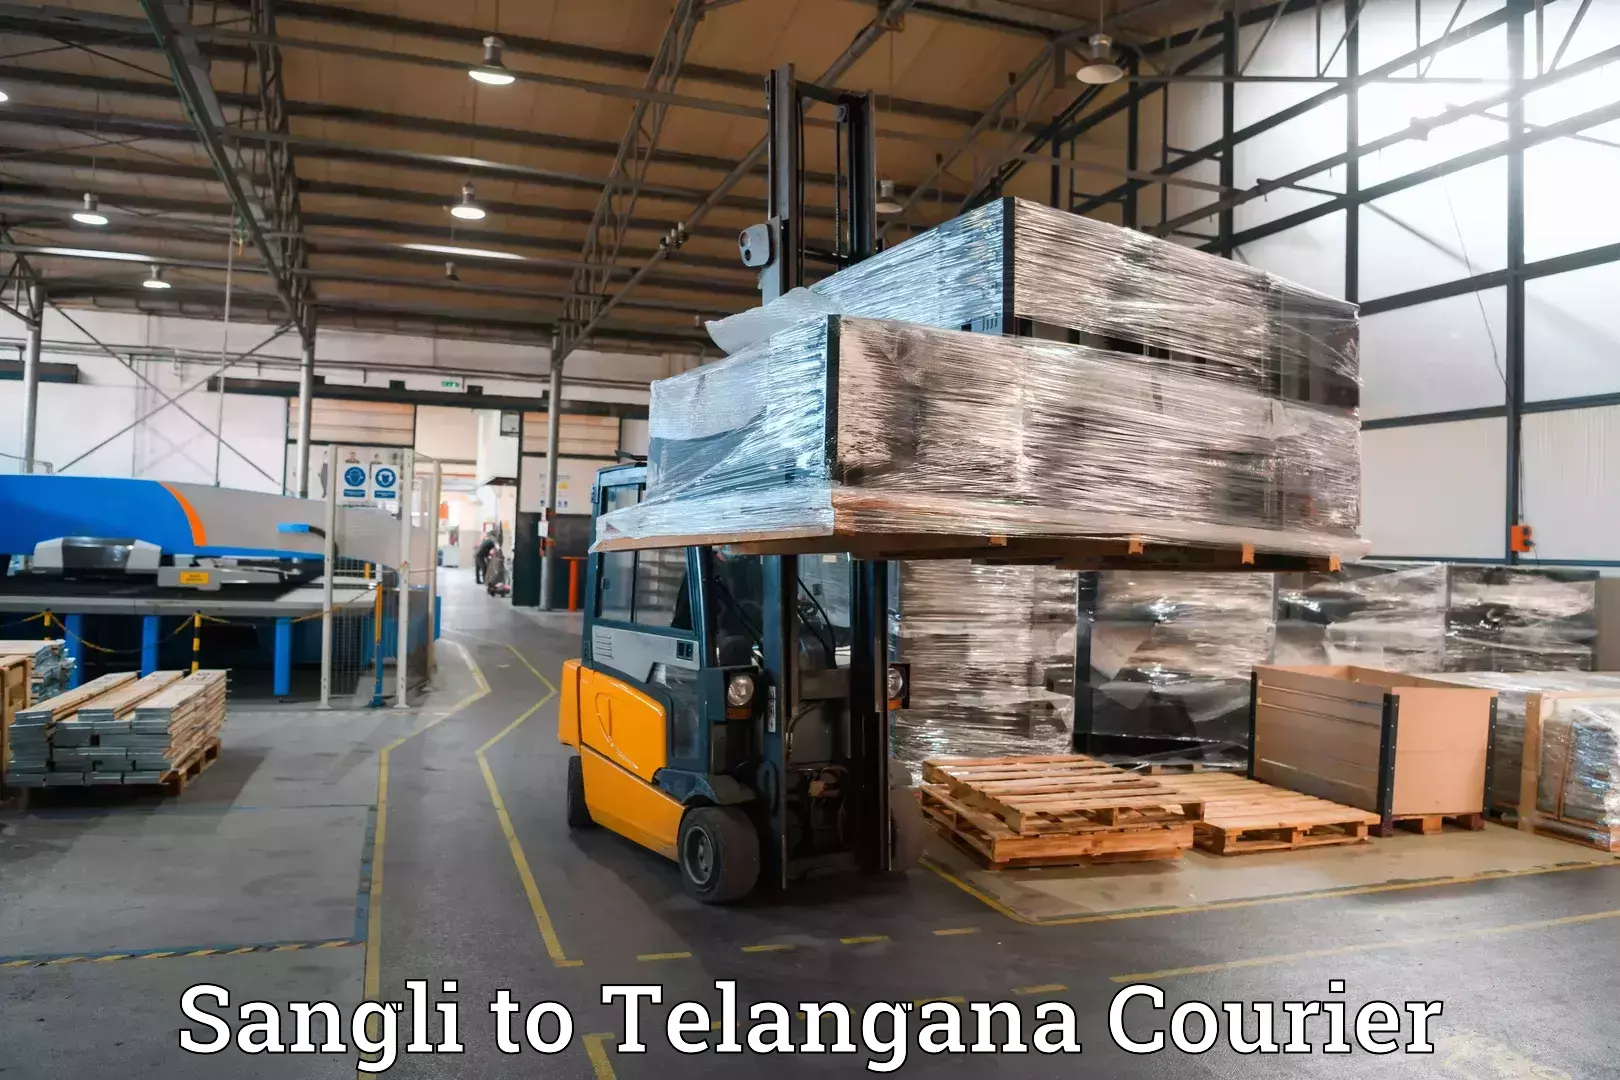 Luggage transport rates in Sangli to Telangana